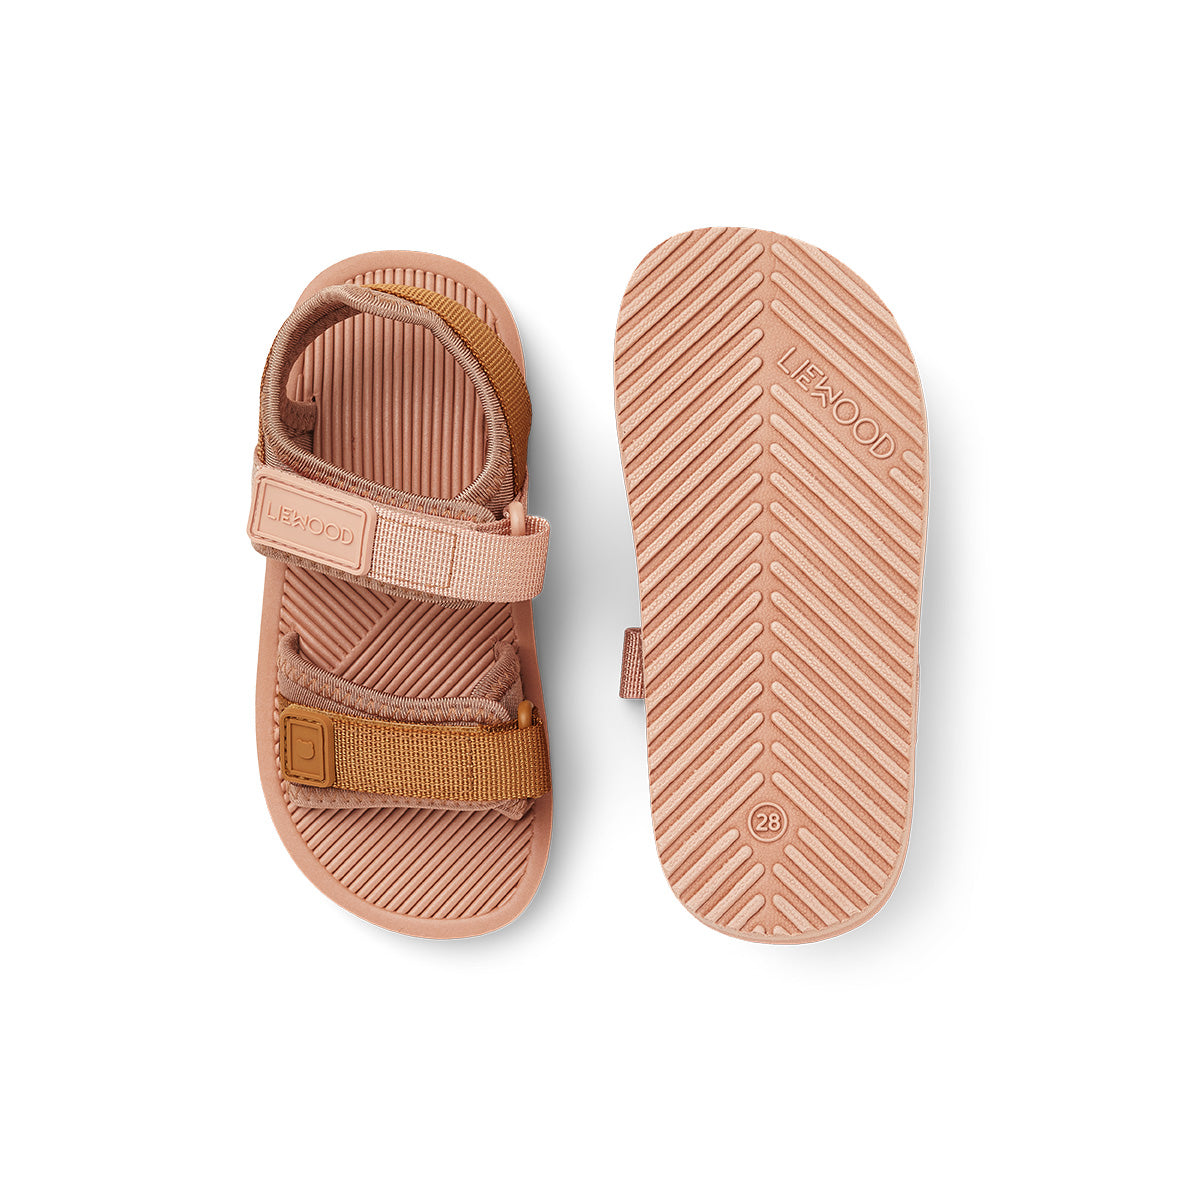 De Liewood monty sandalen rose mix zijn heerlijke sandalen voor de zomer. Dit sportieve en lichtgewichte model is heel erg fijn voor actieve kindjes. Lekker rennen of klimmen met deze sandalen is een feestje. Ook fijn als waterschoenen. VanZus.